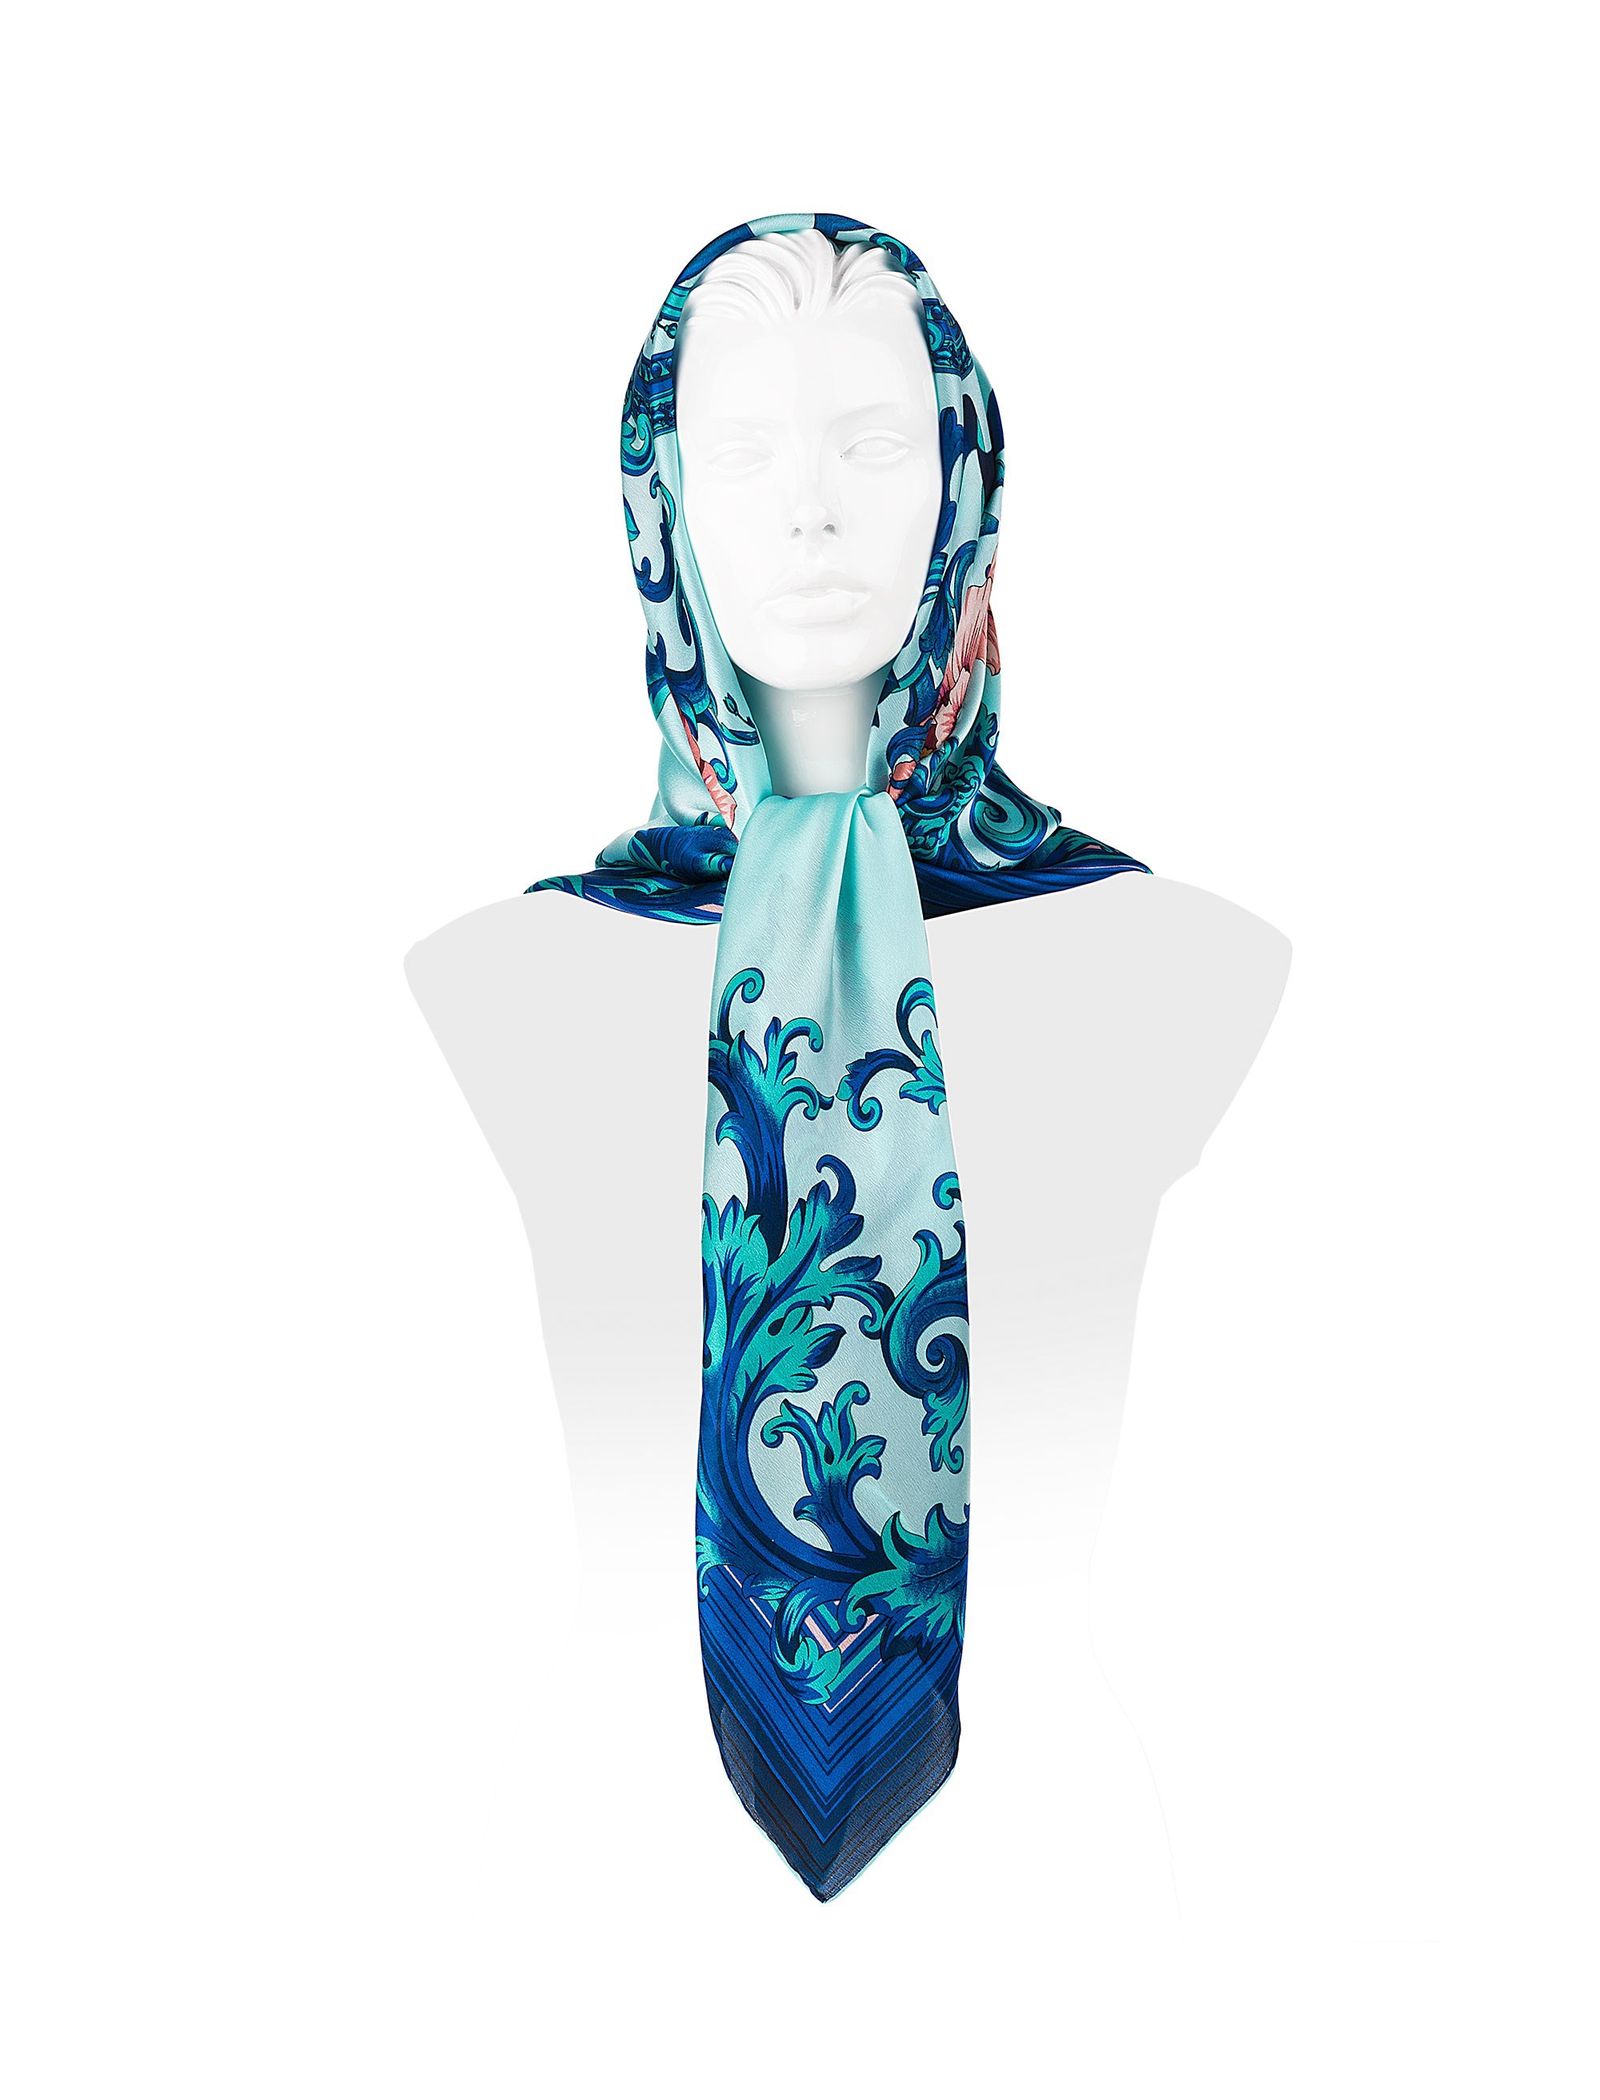 روسری ابریشمی زنانه - رزتی - آبي روشن - 1